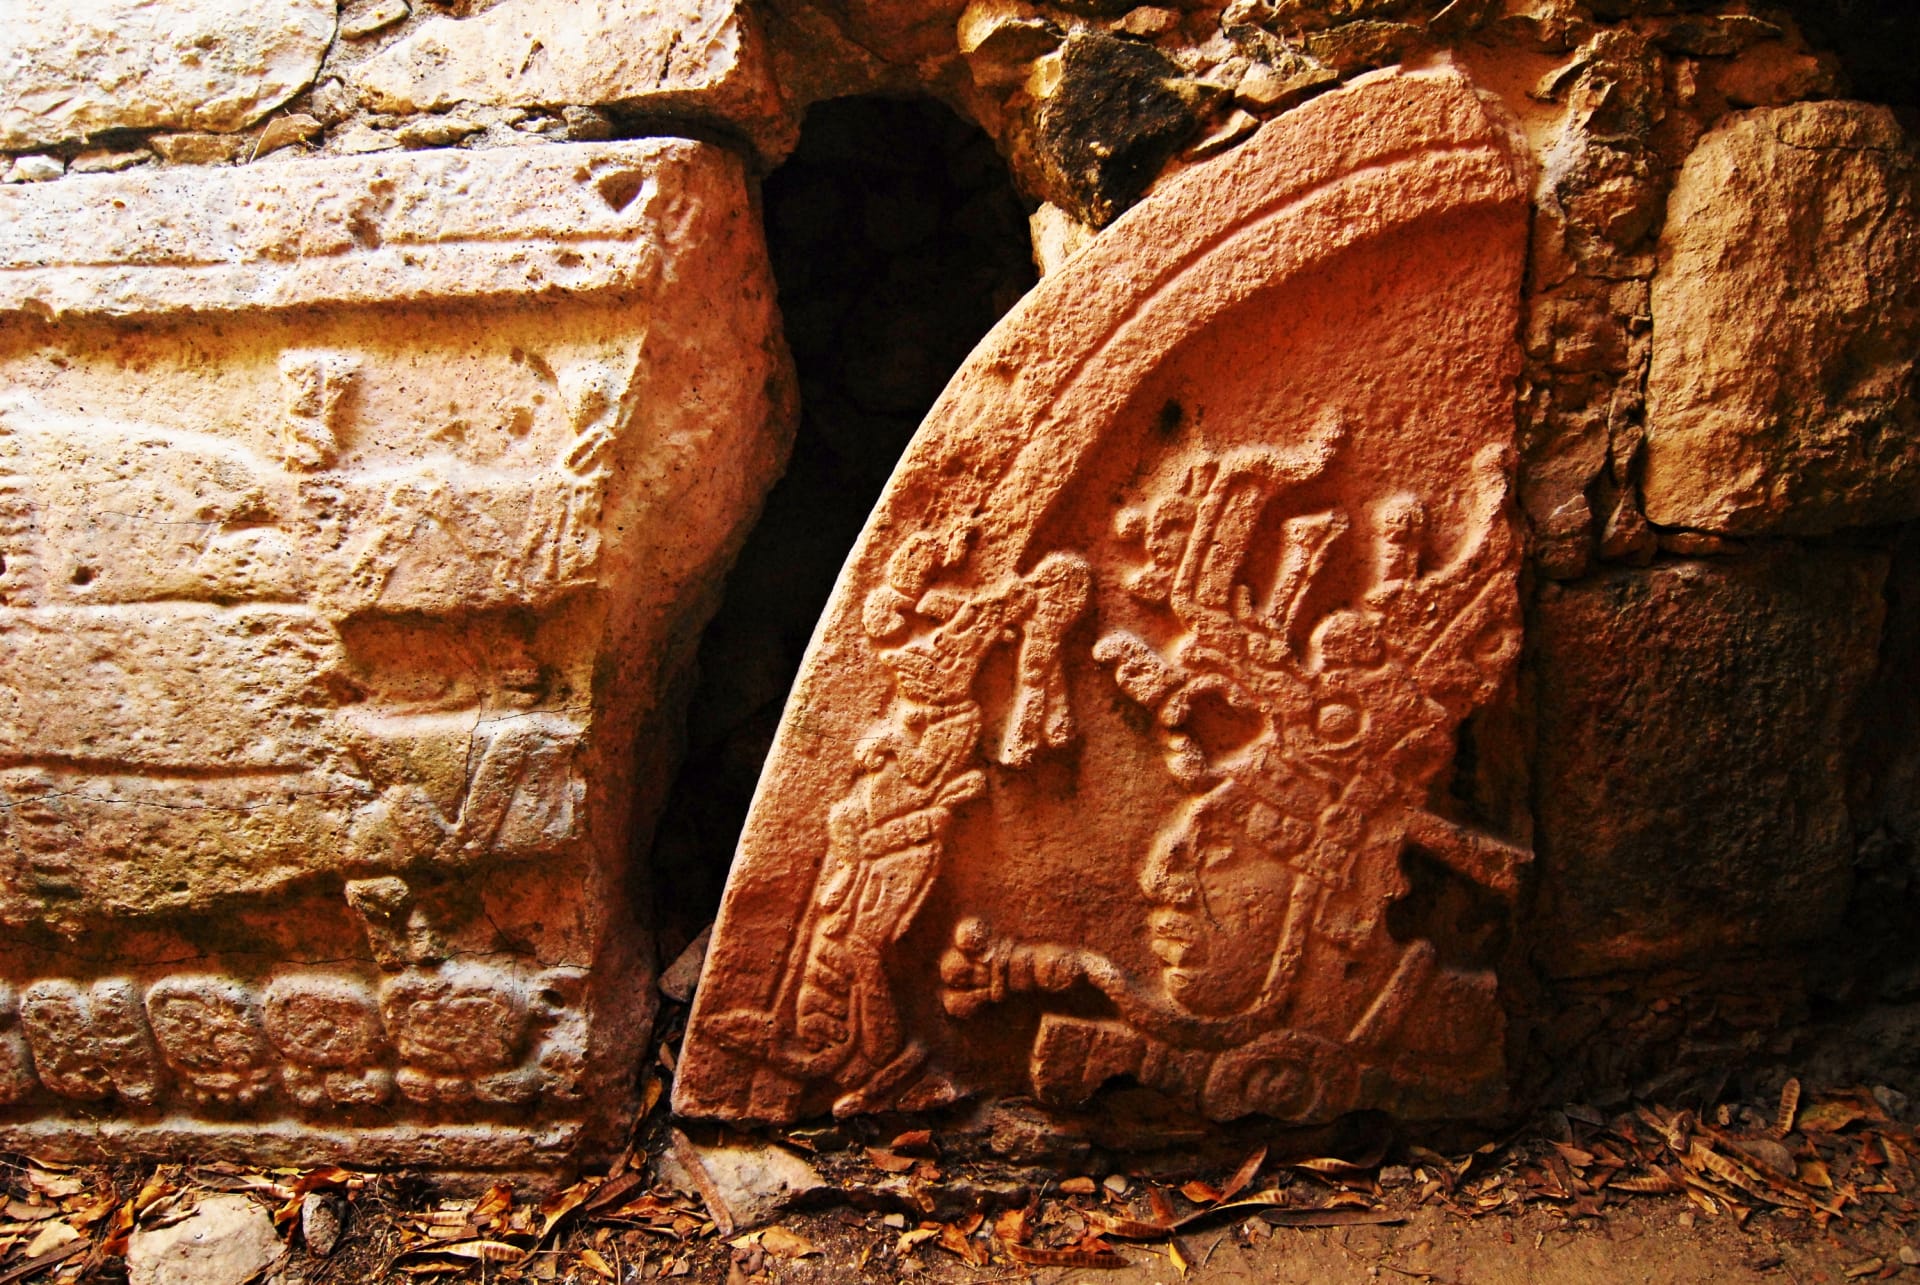 Nejstarší a největší známá památka postavená mayskou civilizací byla nalezena v Mexiku. Nazývá se Aguada Fénix a jedná se o obrovskou vyvýšenou platformu dlouhou 1,4 km.